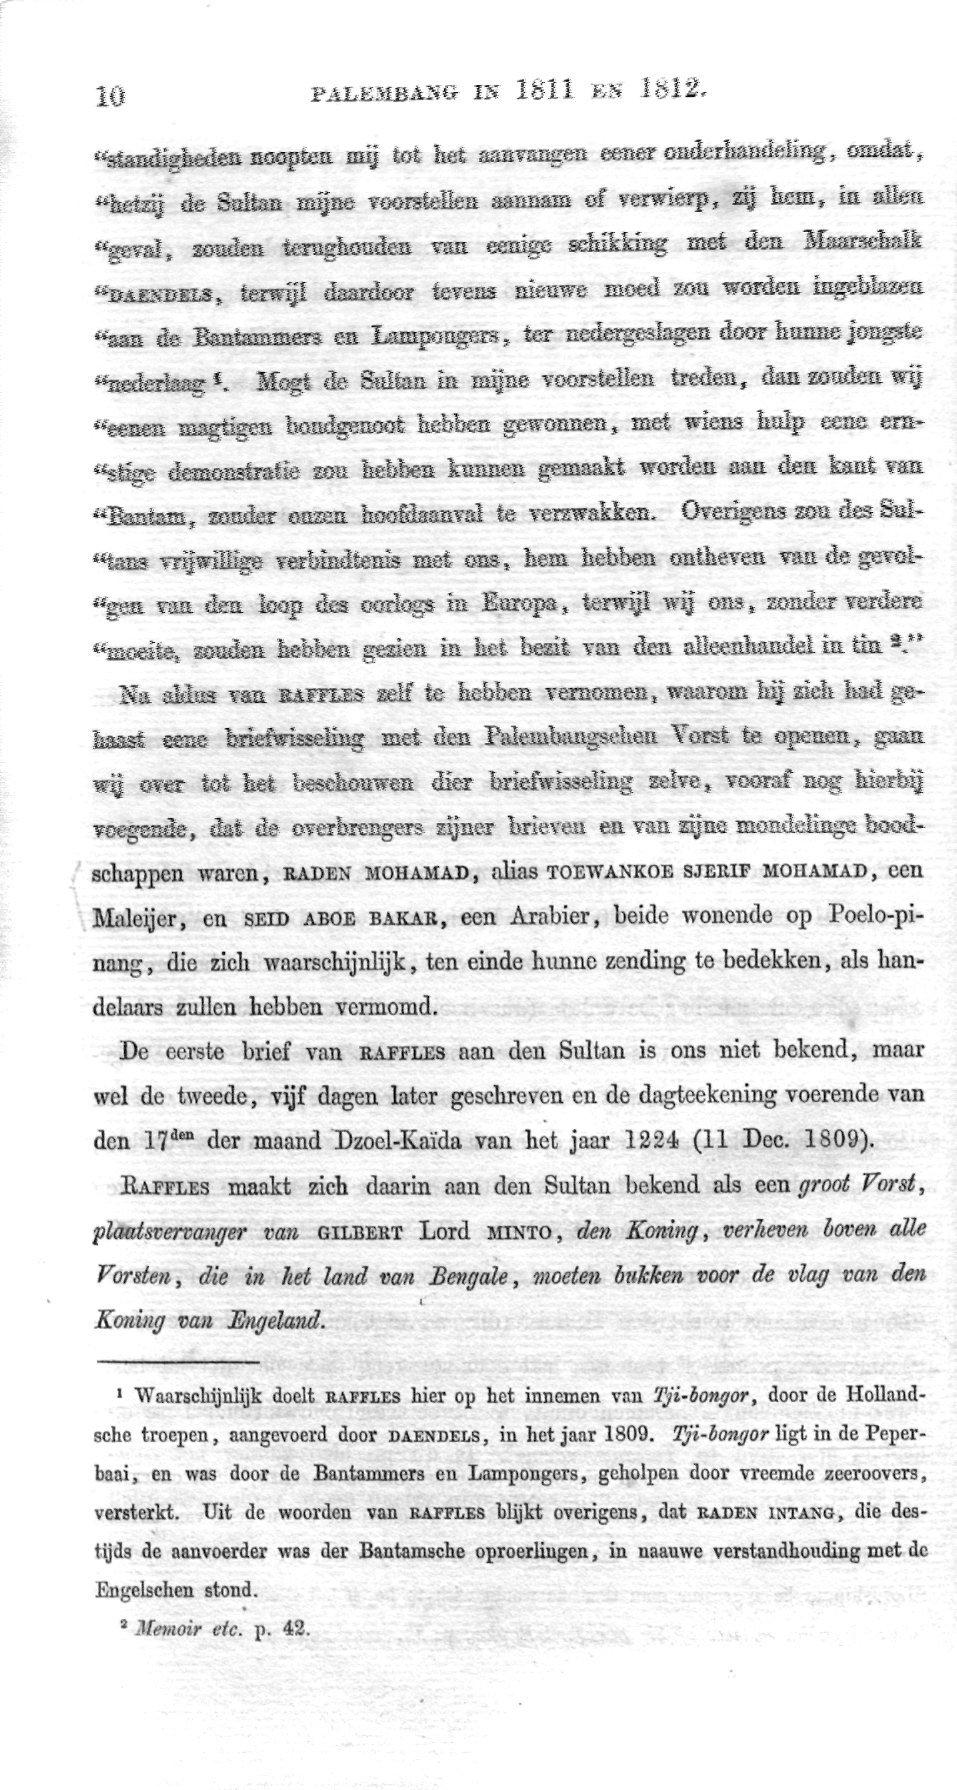 PALKKBASG IN 1811 KS Ïgl2.